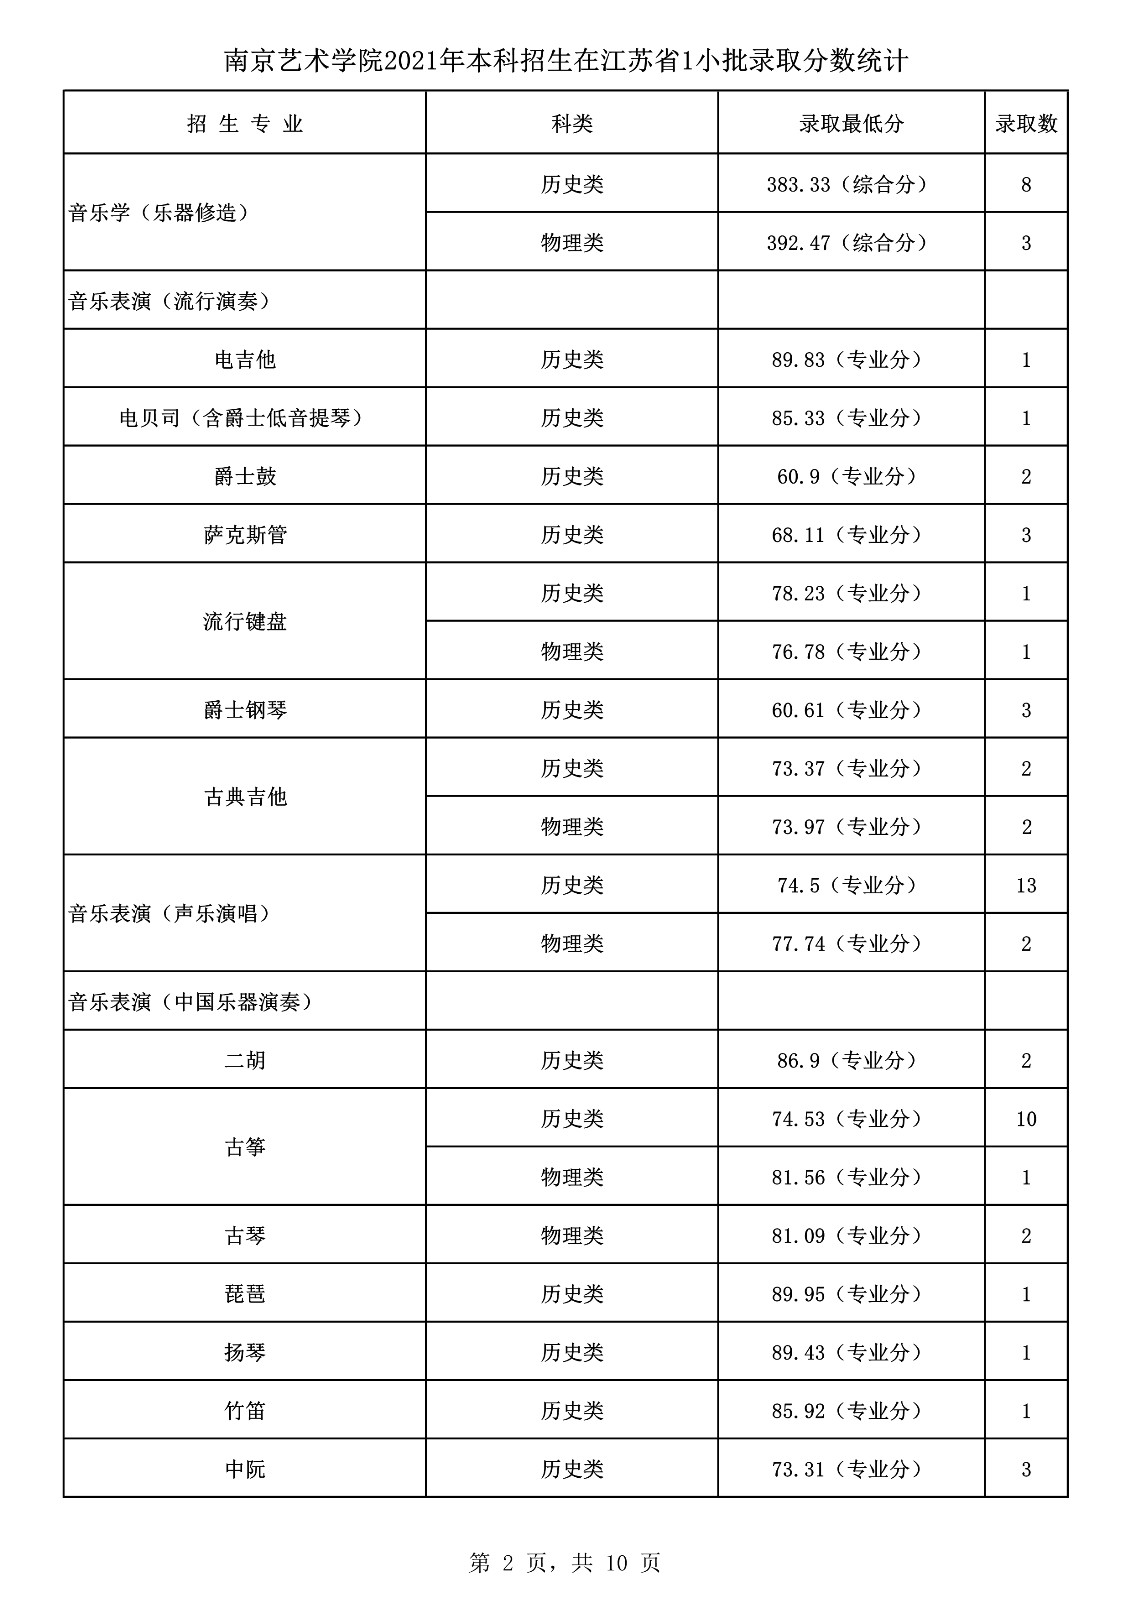 中国舞蹈艺术学院排名第五的南京艺术学院舞蹈专业录取最低分是多少 符合什么要求才能报考呢